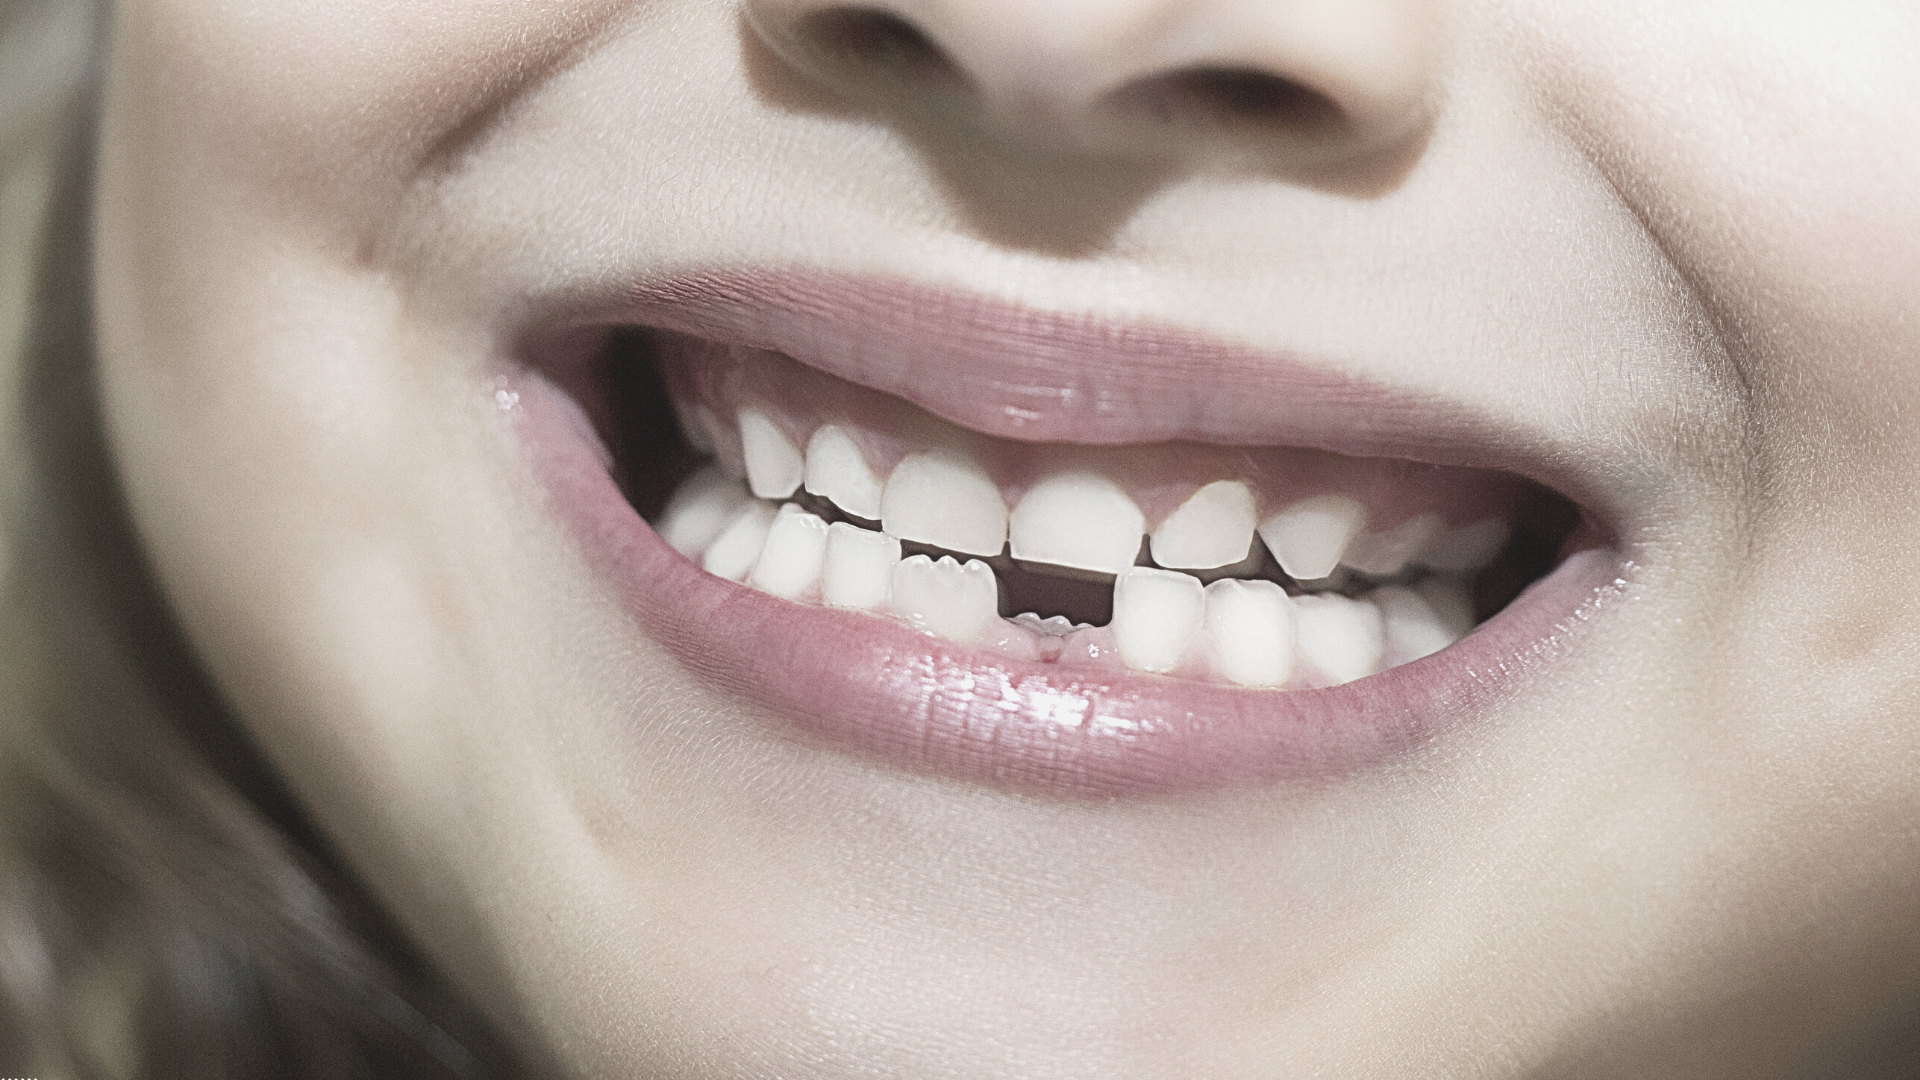 Qué es y cómo tratar la agenesia dental